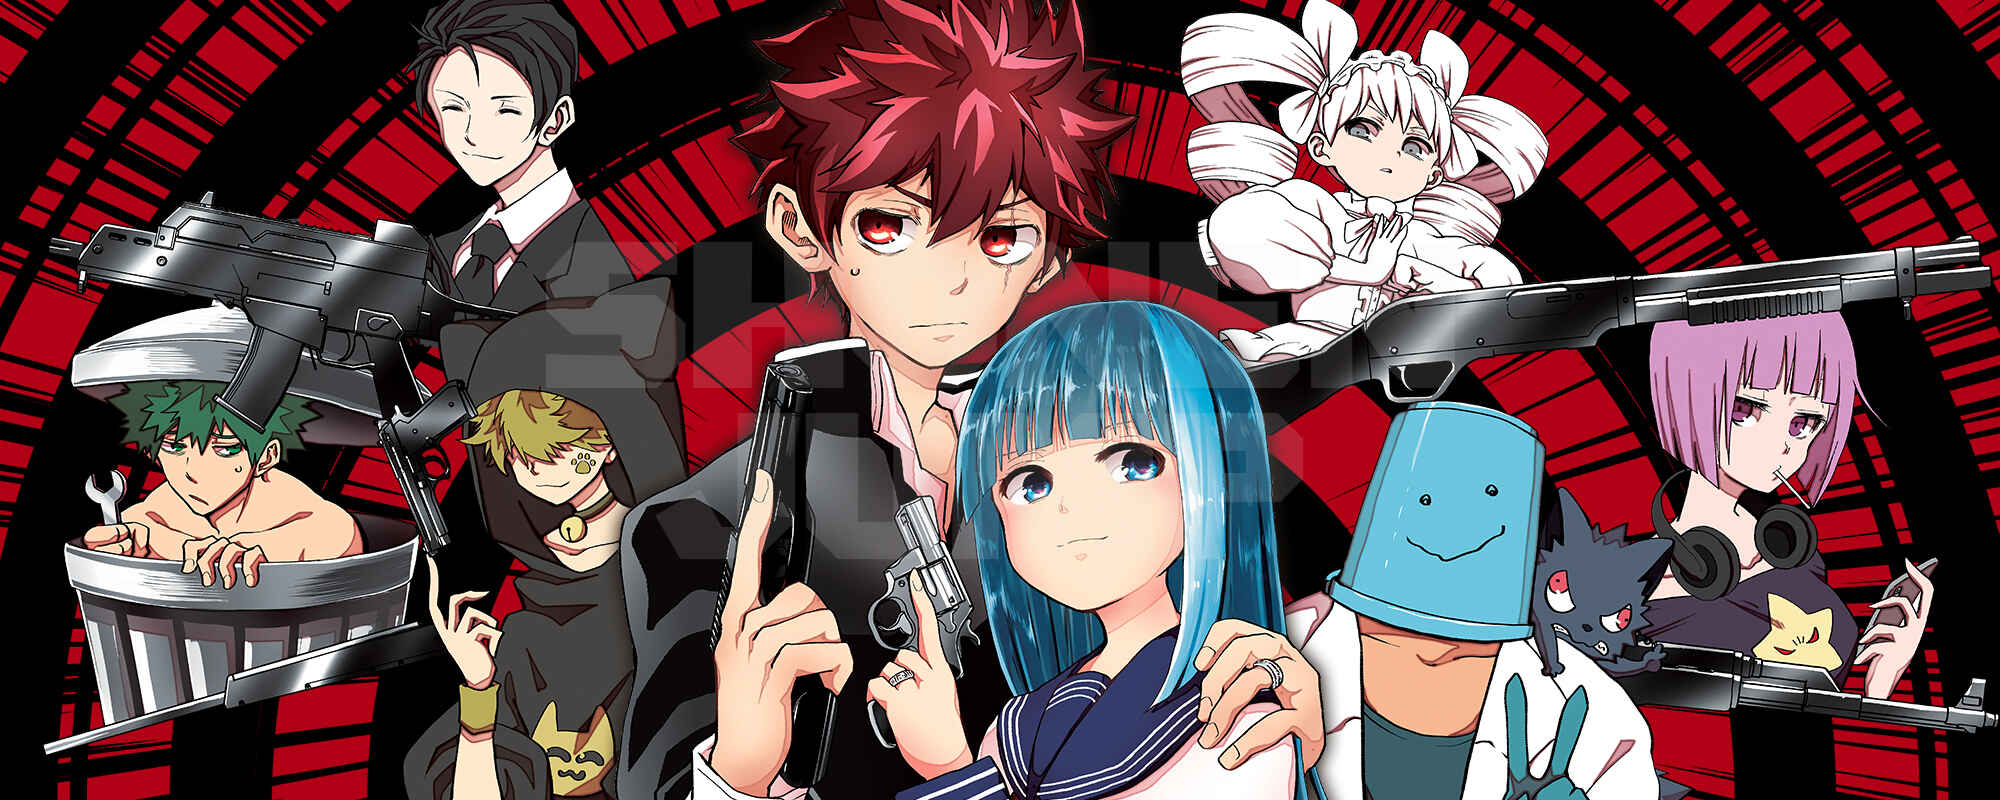 10 Manga Like Spy x Family